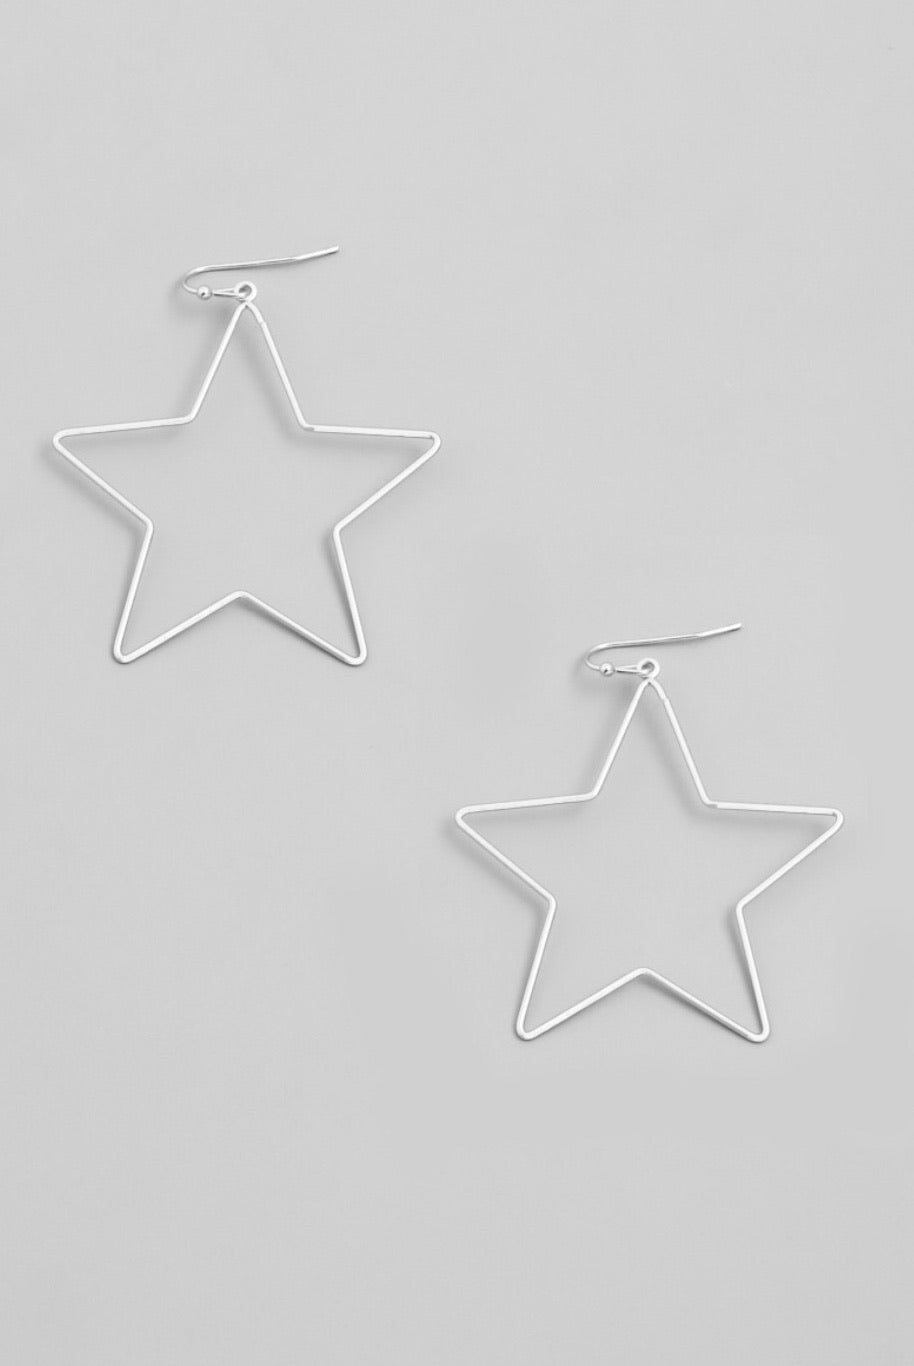 Star Shaped Lightweight Wire Dangle Drop Earrings